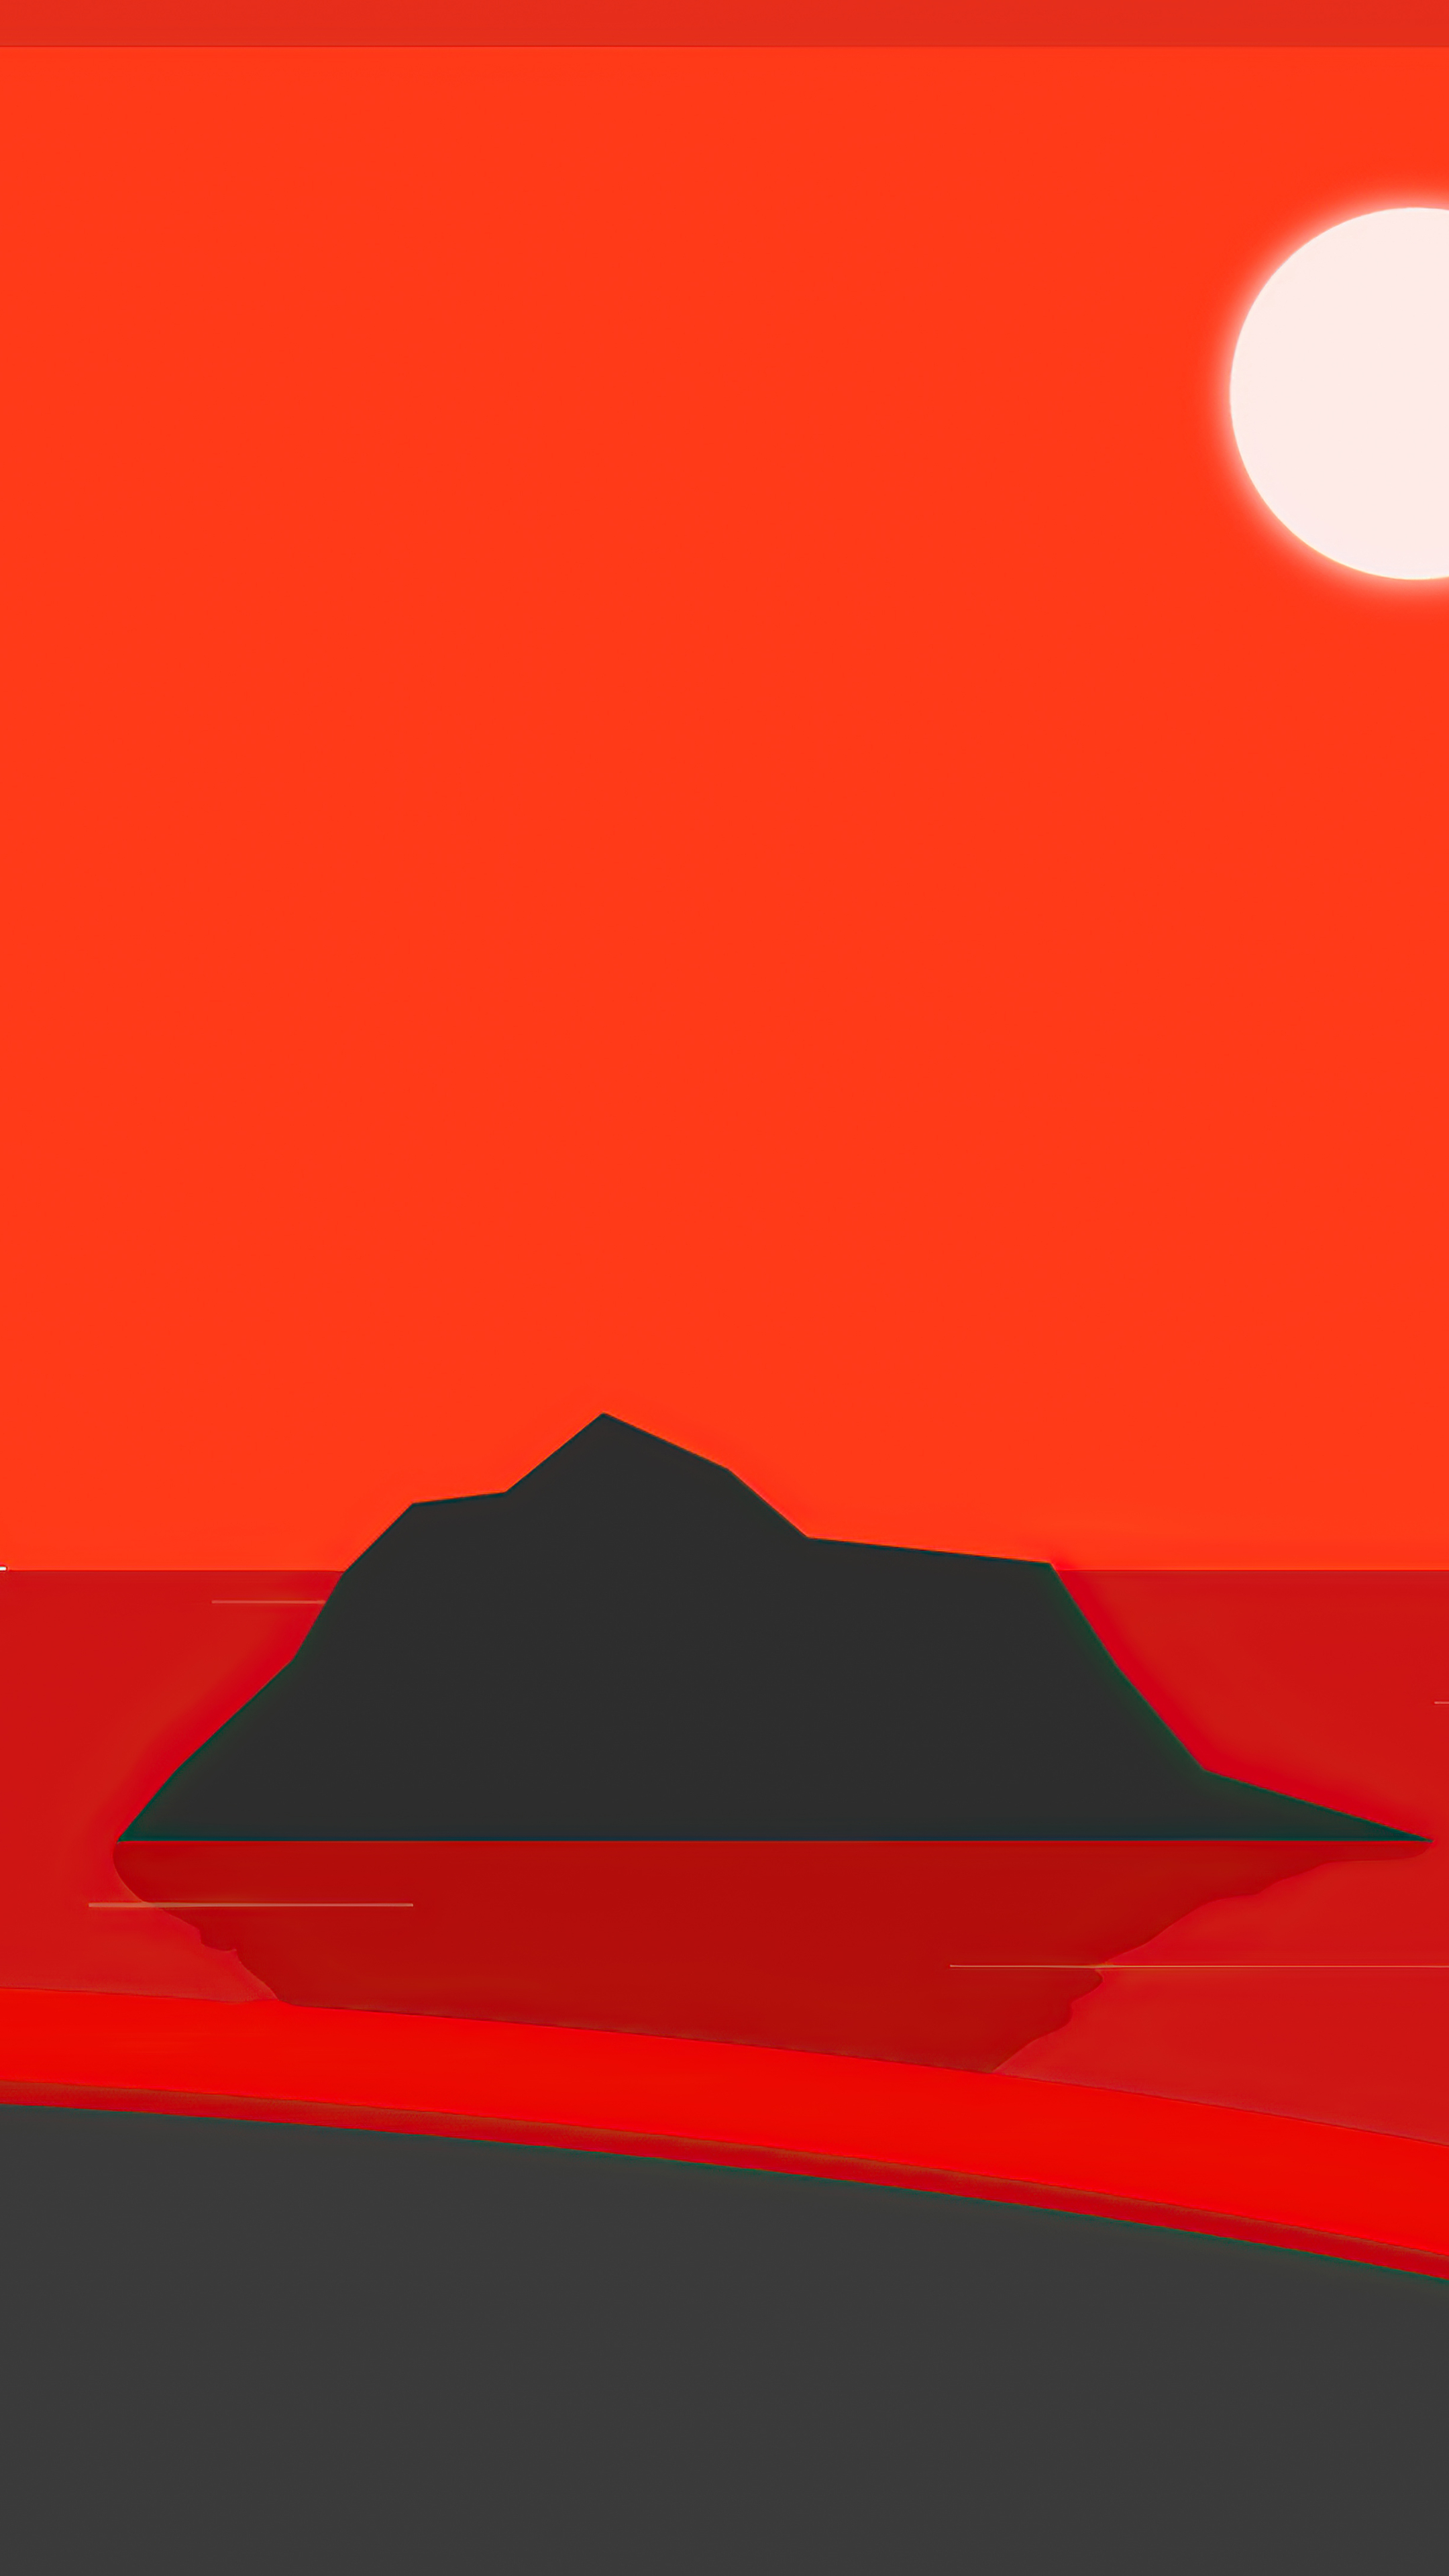 نقاشی دیجیتالی جالب قرمز مشکی برای زمینه آیفون